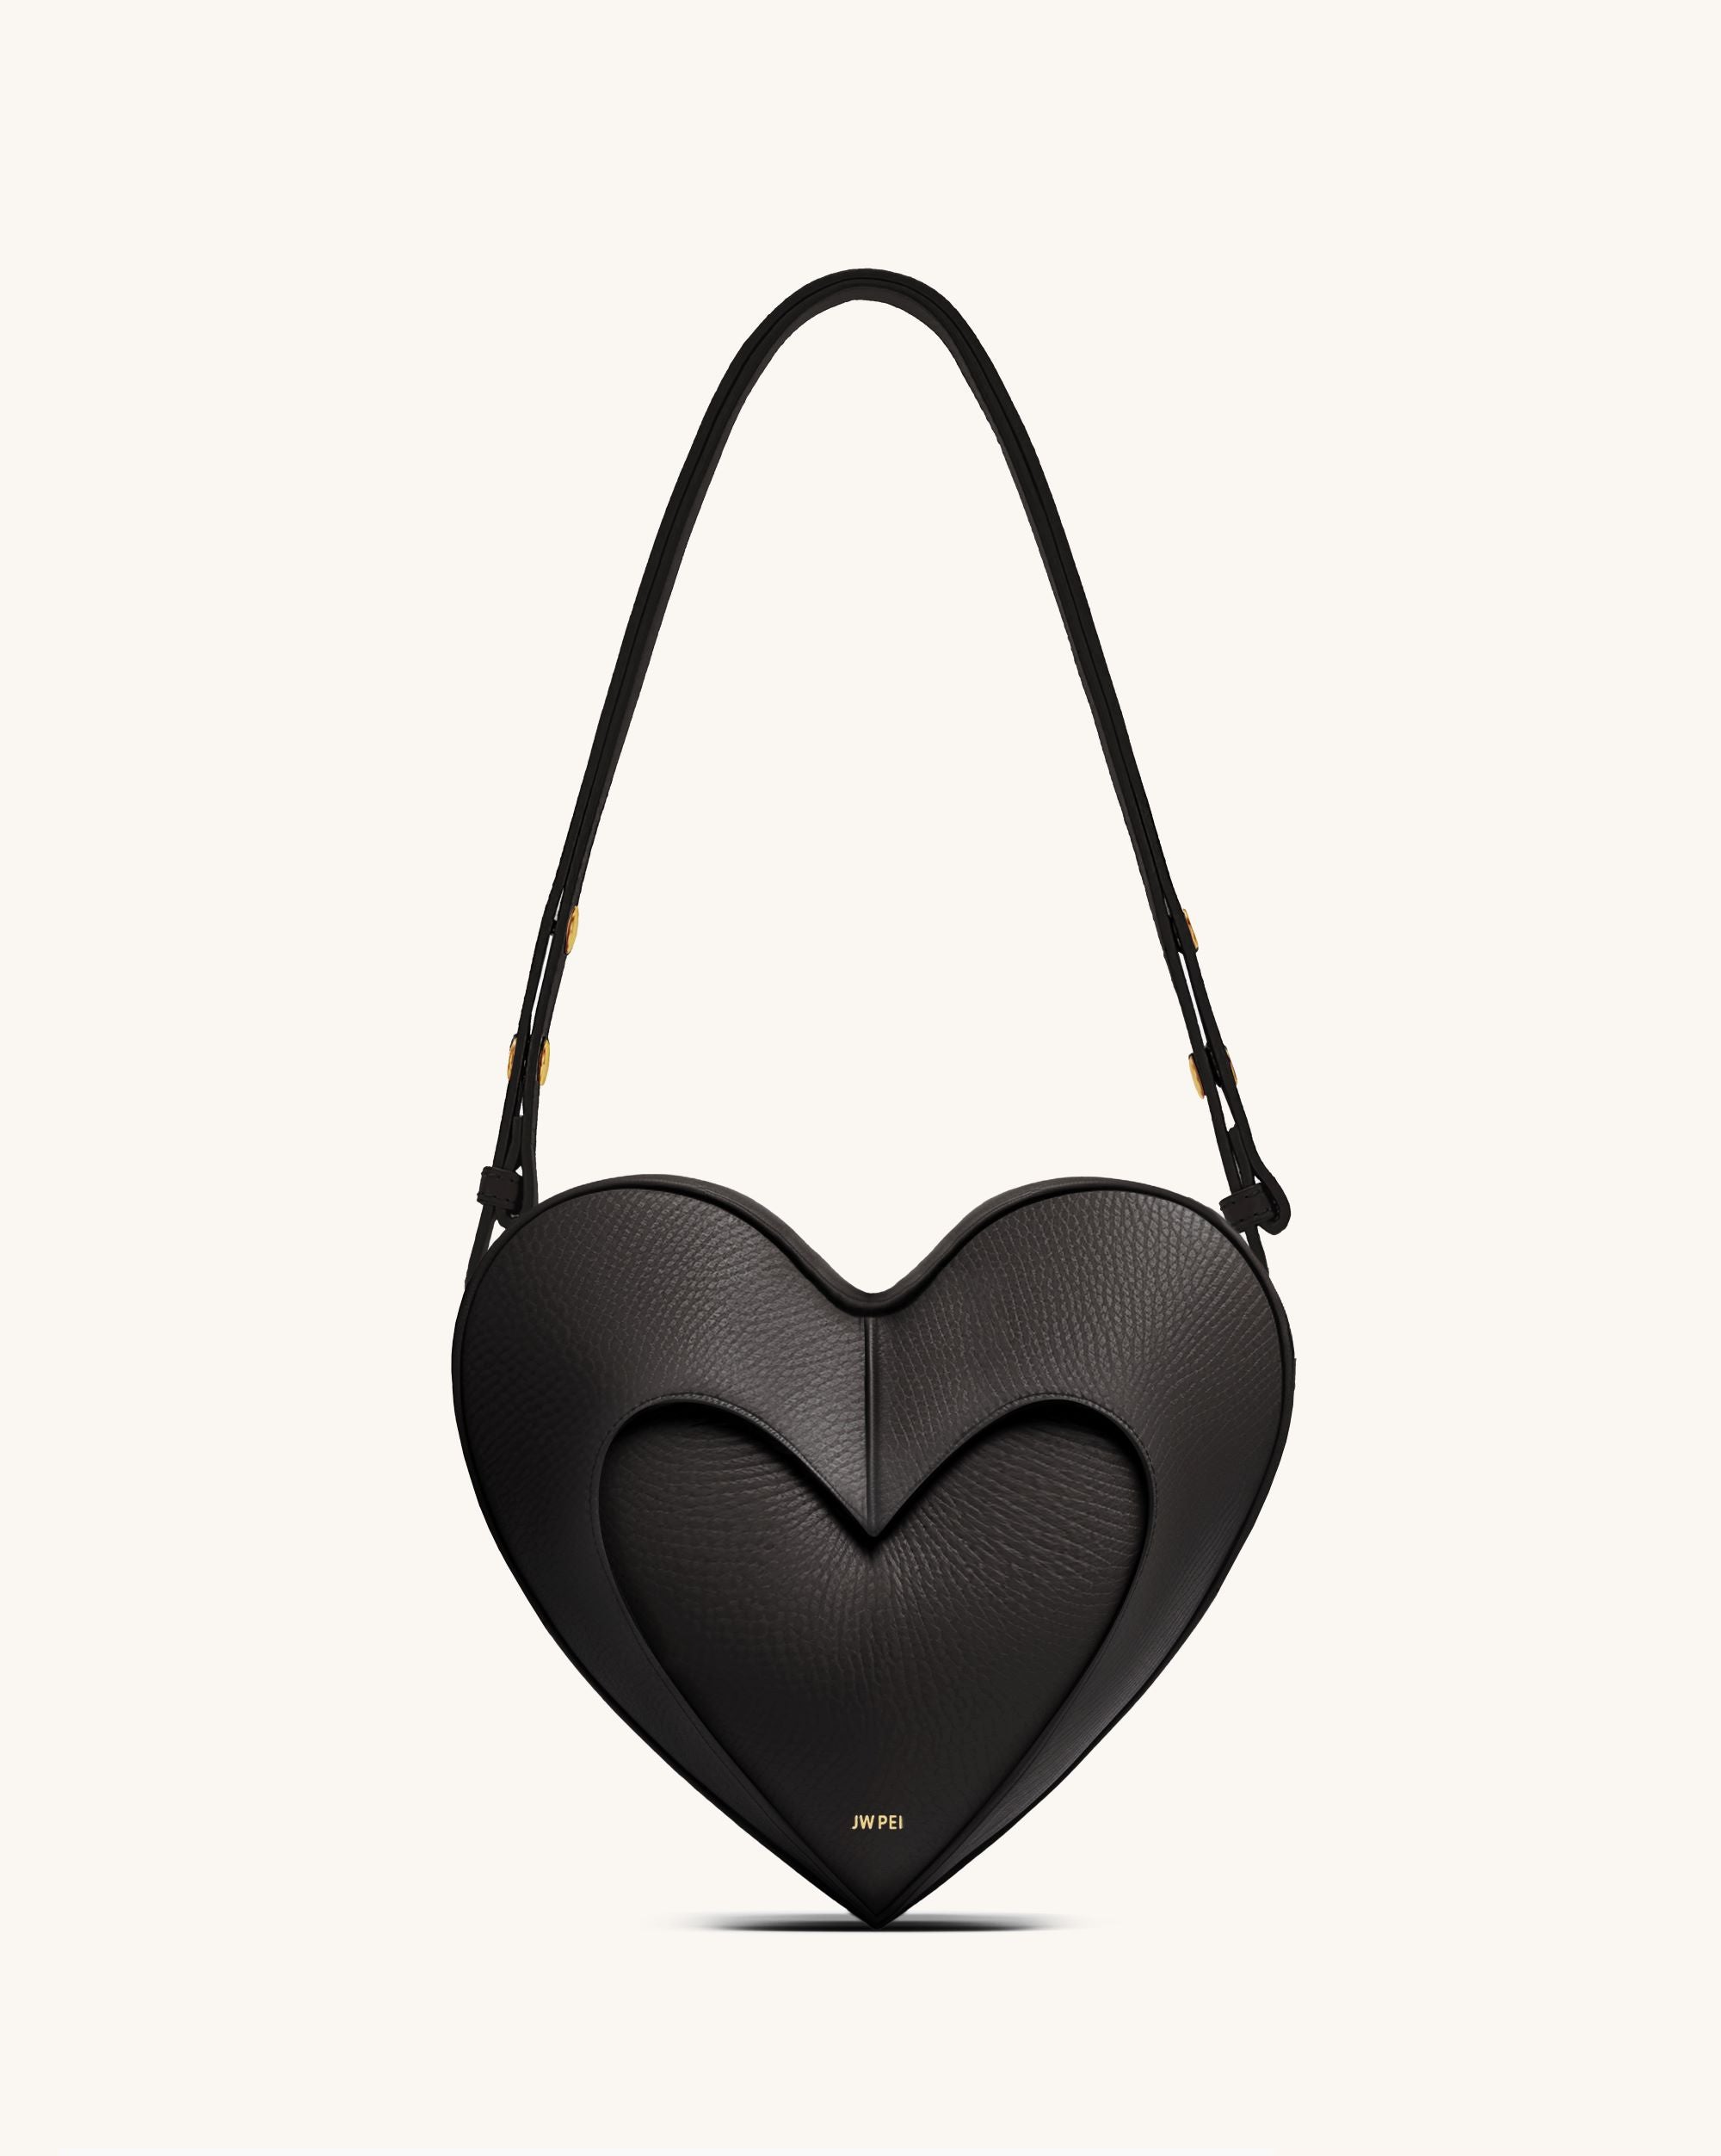 Love in a Bag Heart Purse | Heart shaped bag, Bags, Purses